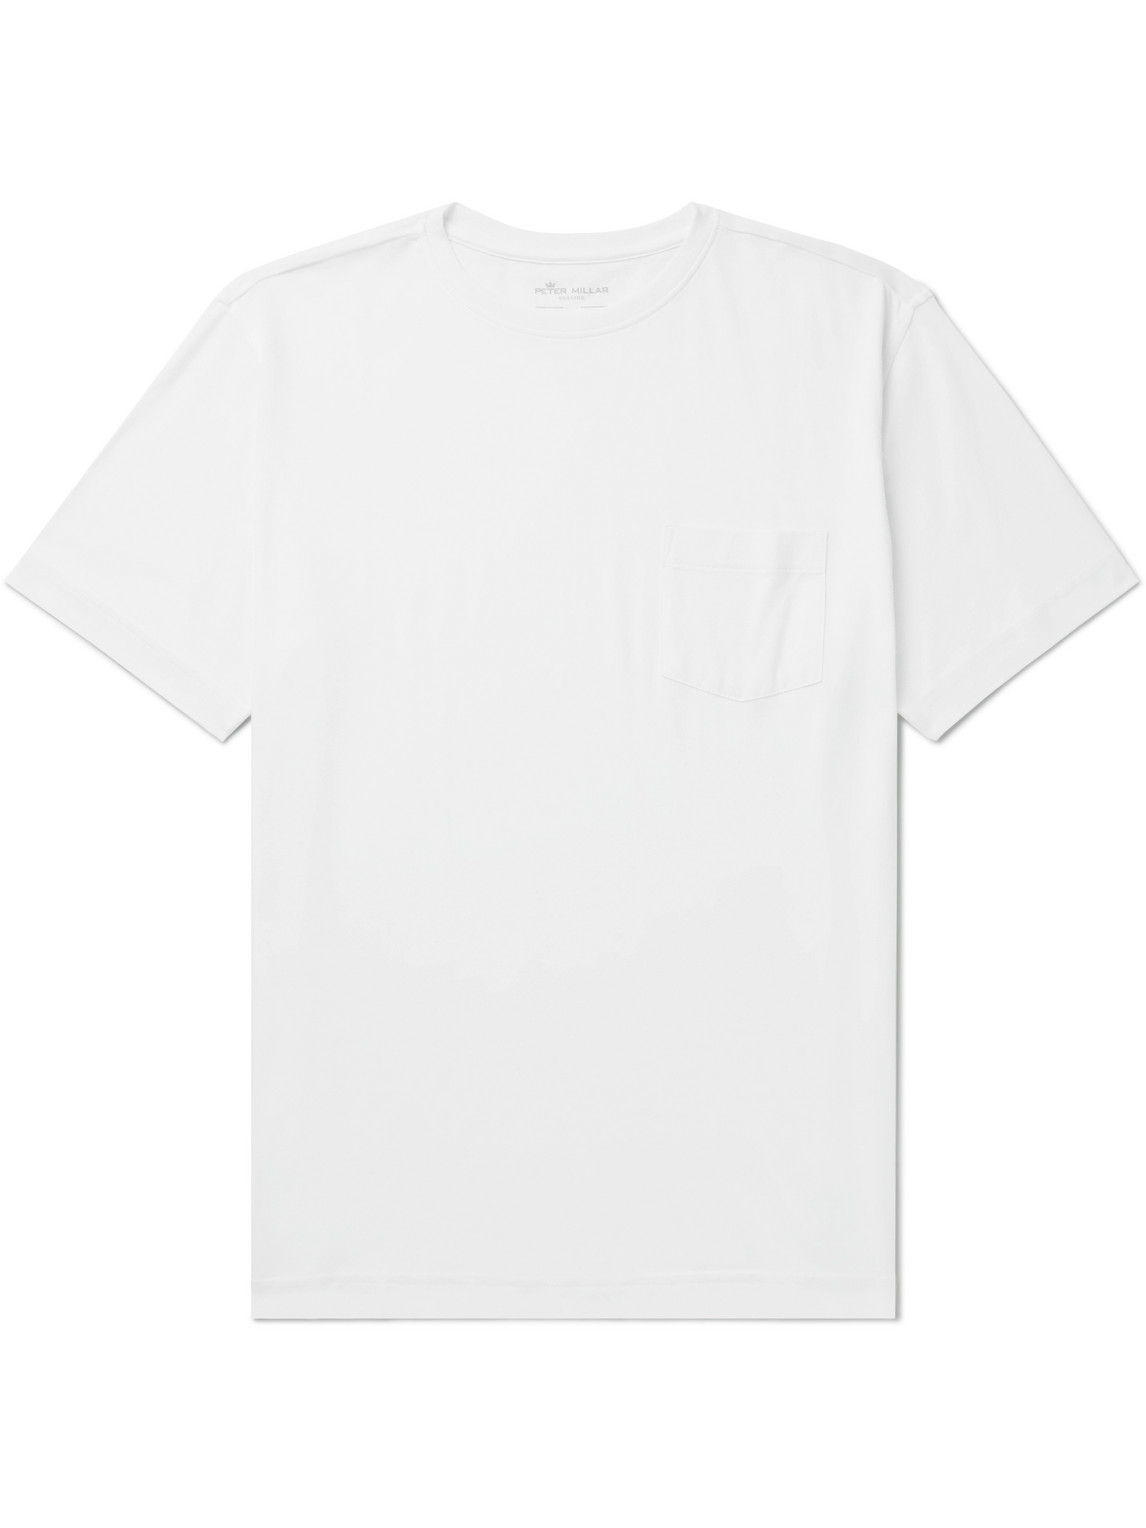 Peter Millar Seaside Summer Cotton and Modal-Blend Jersey T-Shirt